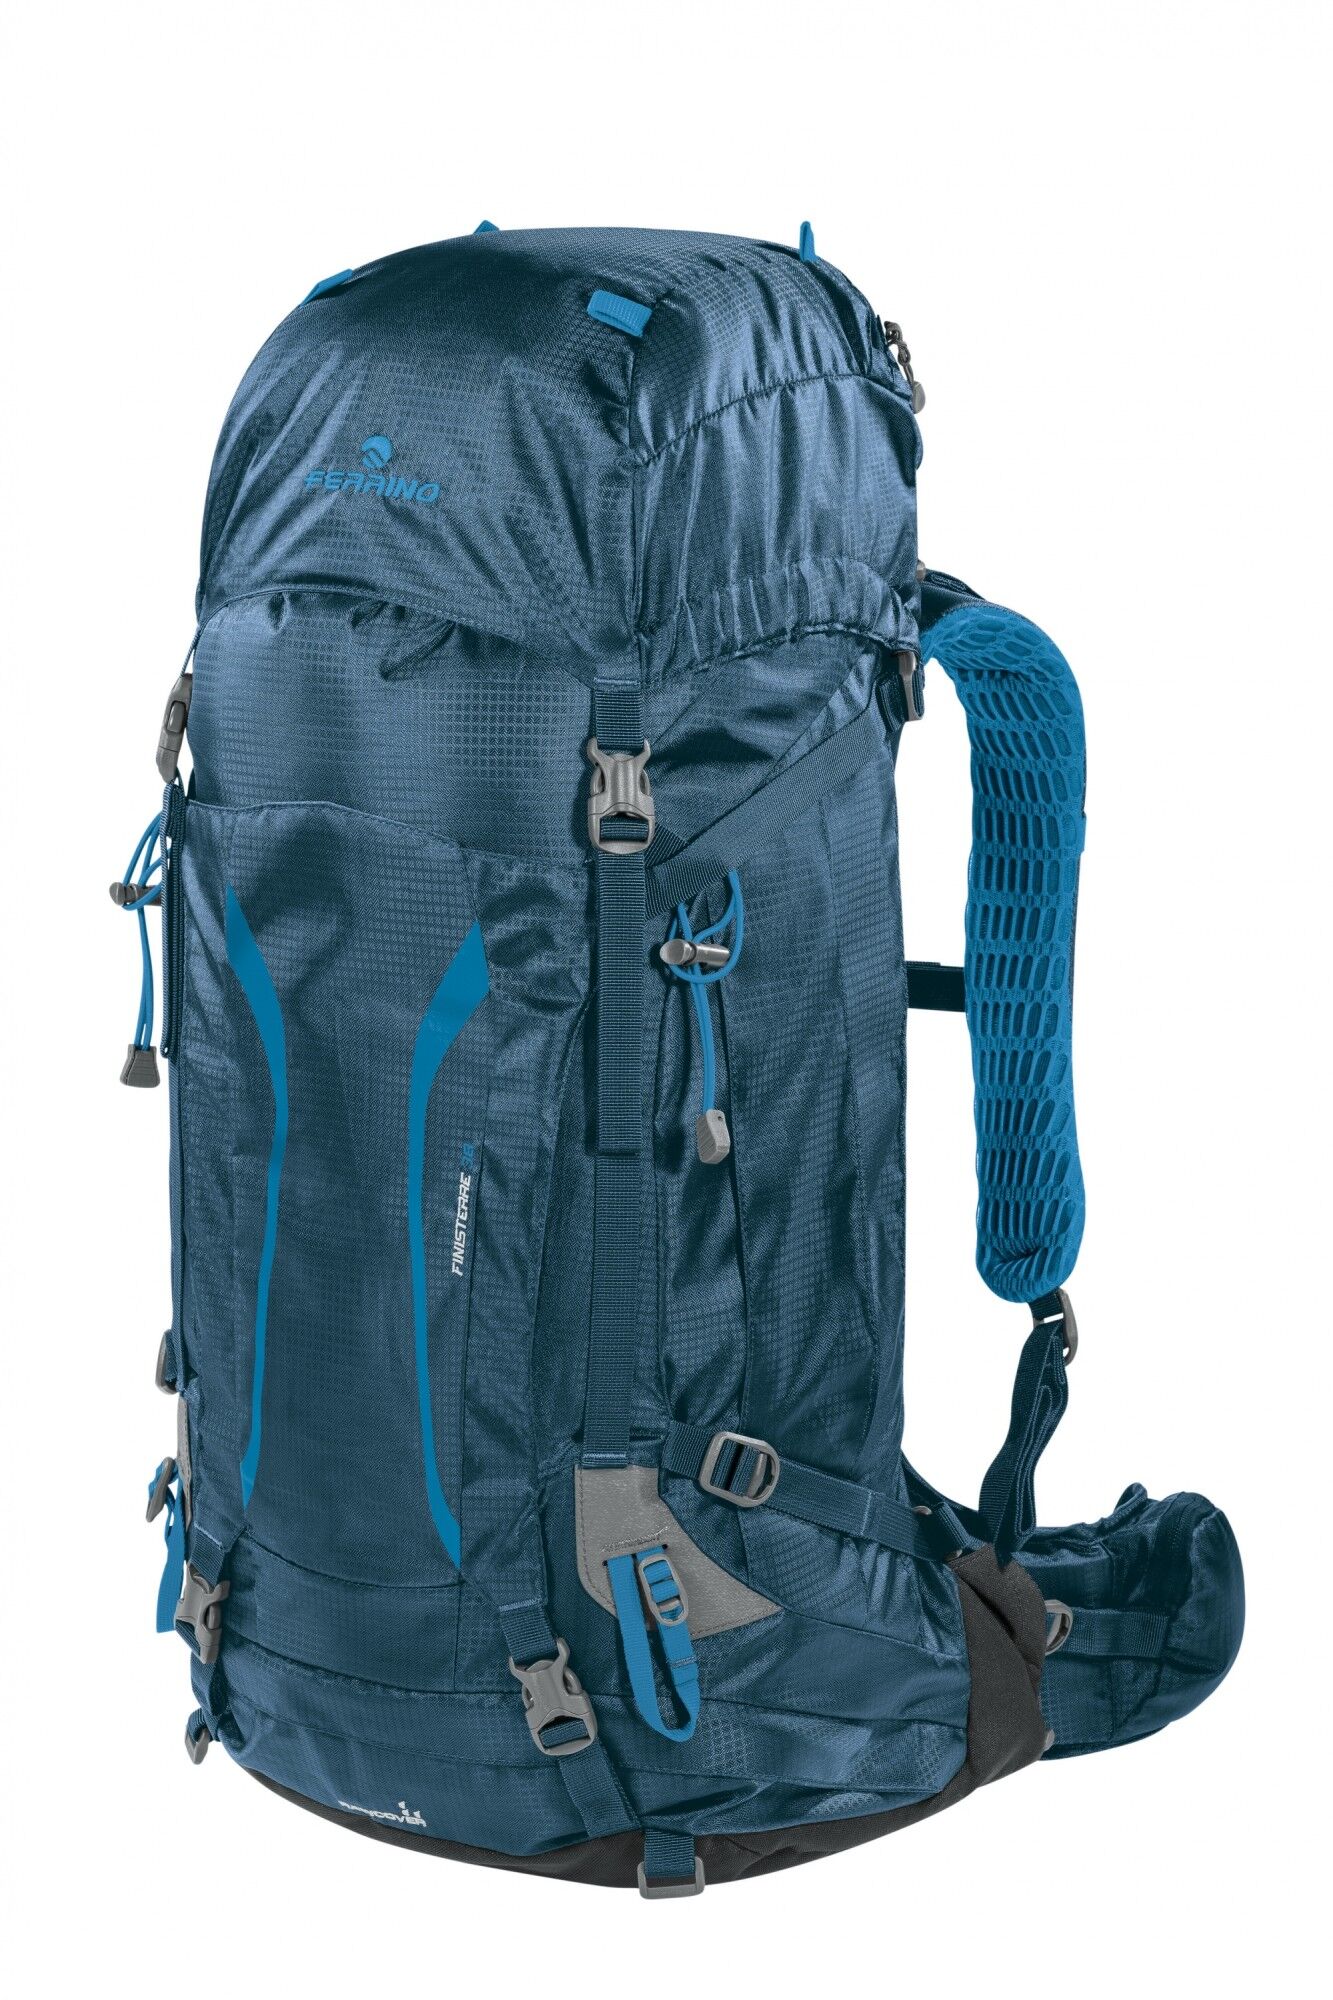 Ferrino Finisterre 38 - Hiking backpack